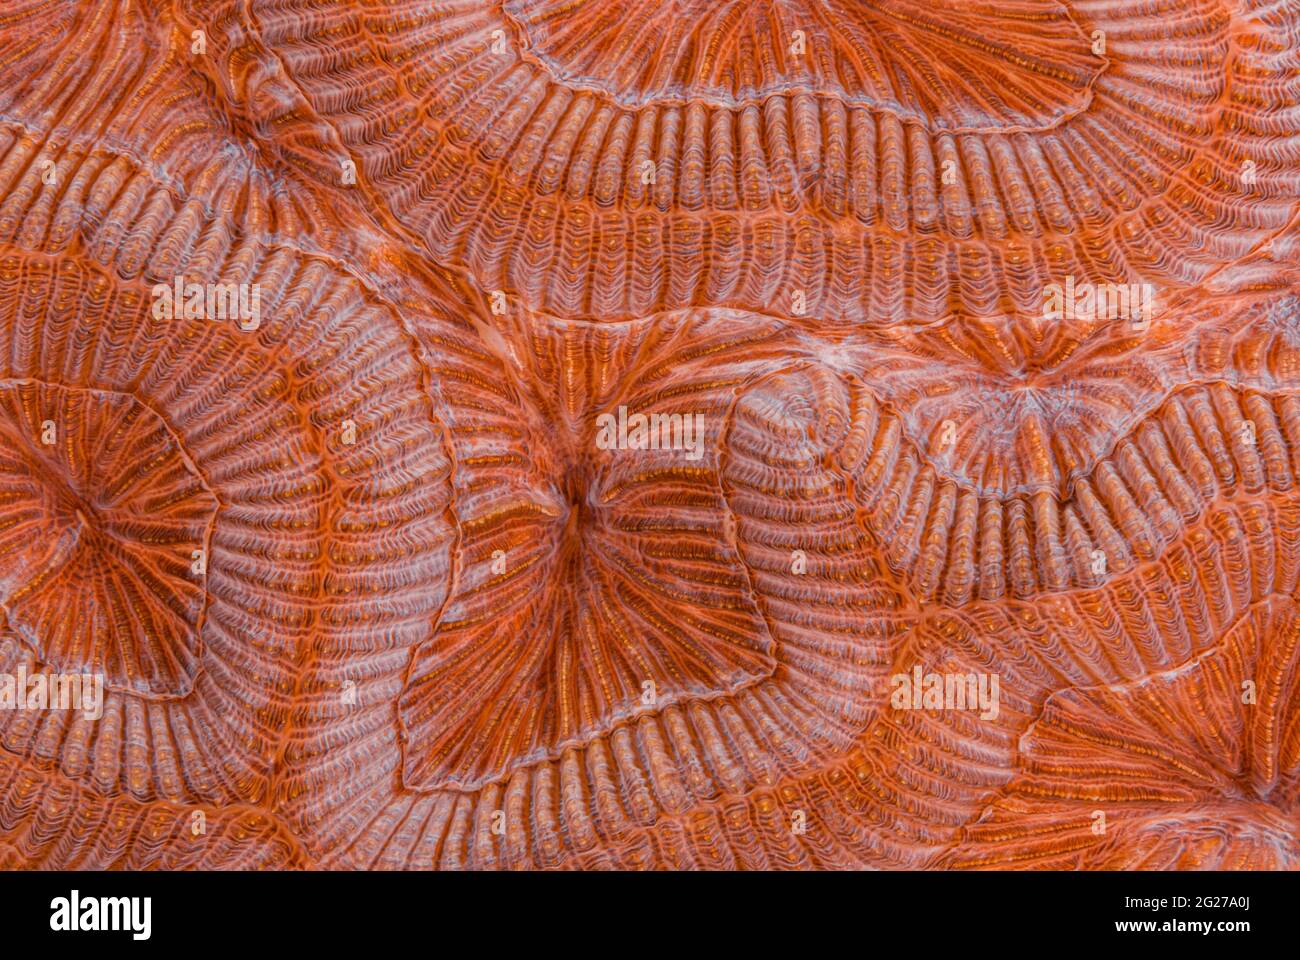 Primo piano astratto del corallo cerebrale scanalato (Diploria labirintiformis). Foto Stock